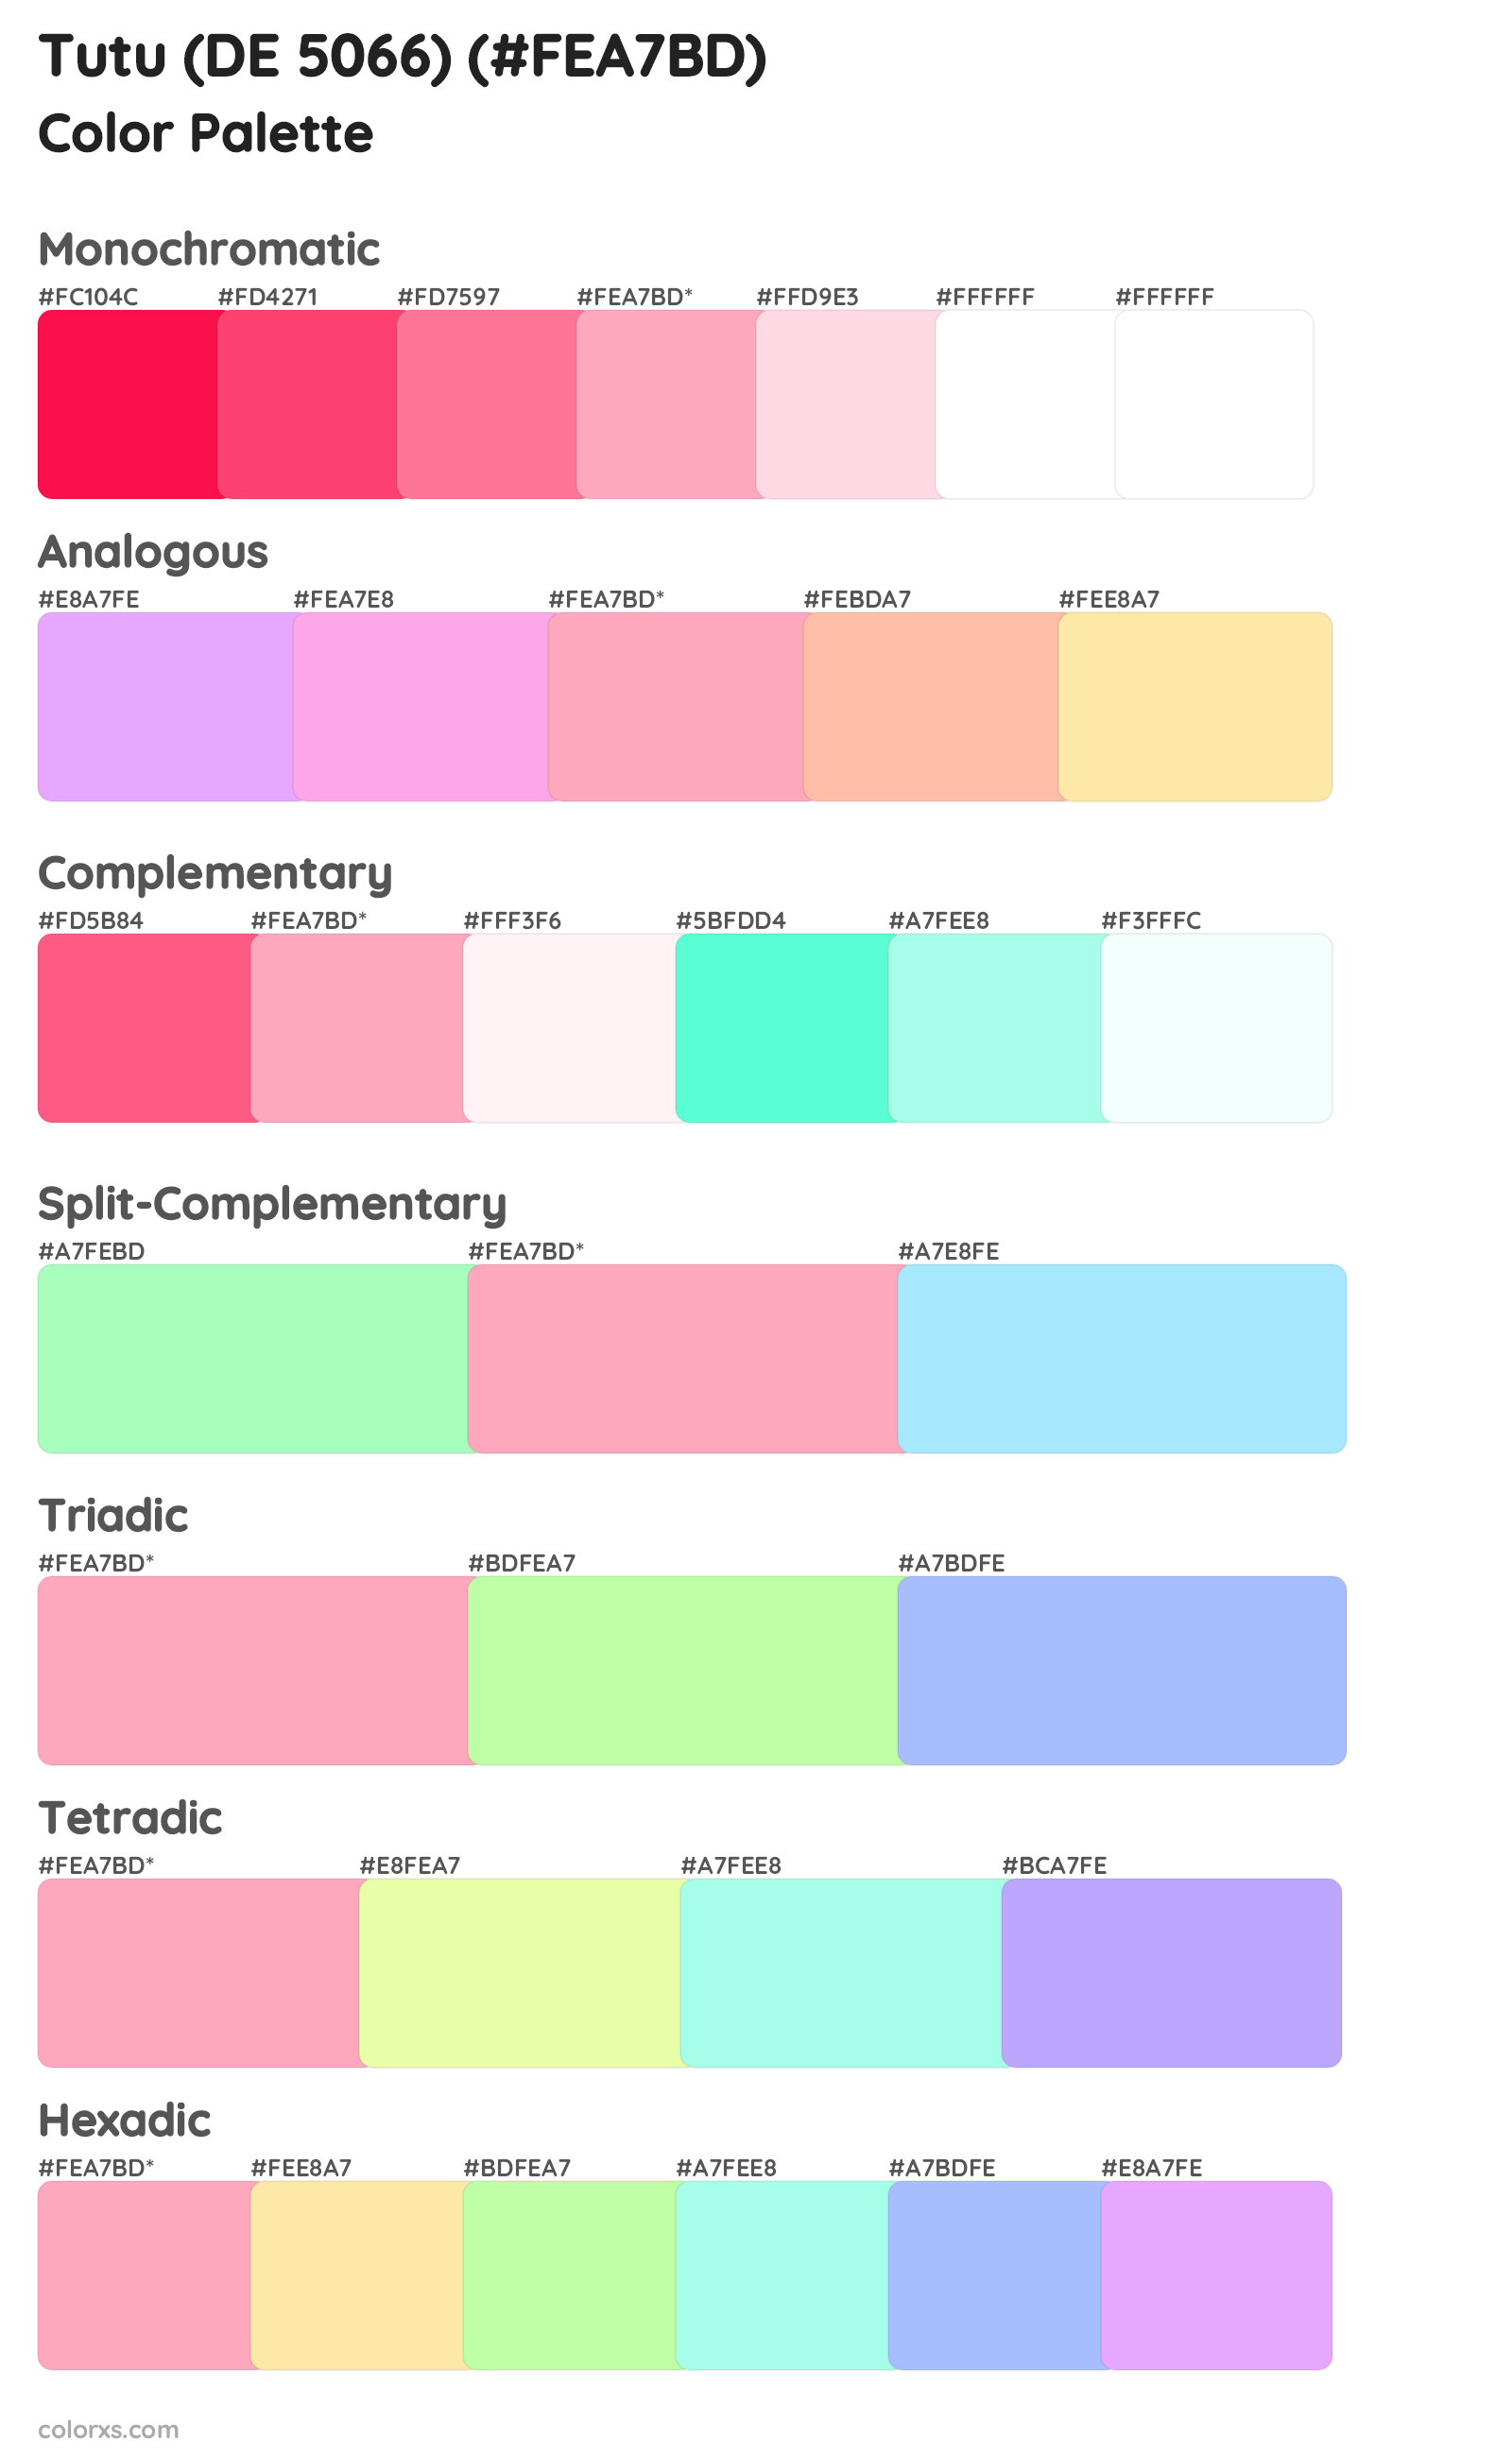 Tutu (DE 5066) Color Scheme Palettes